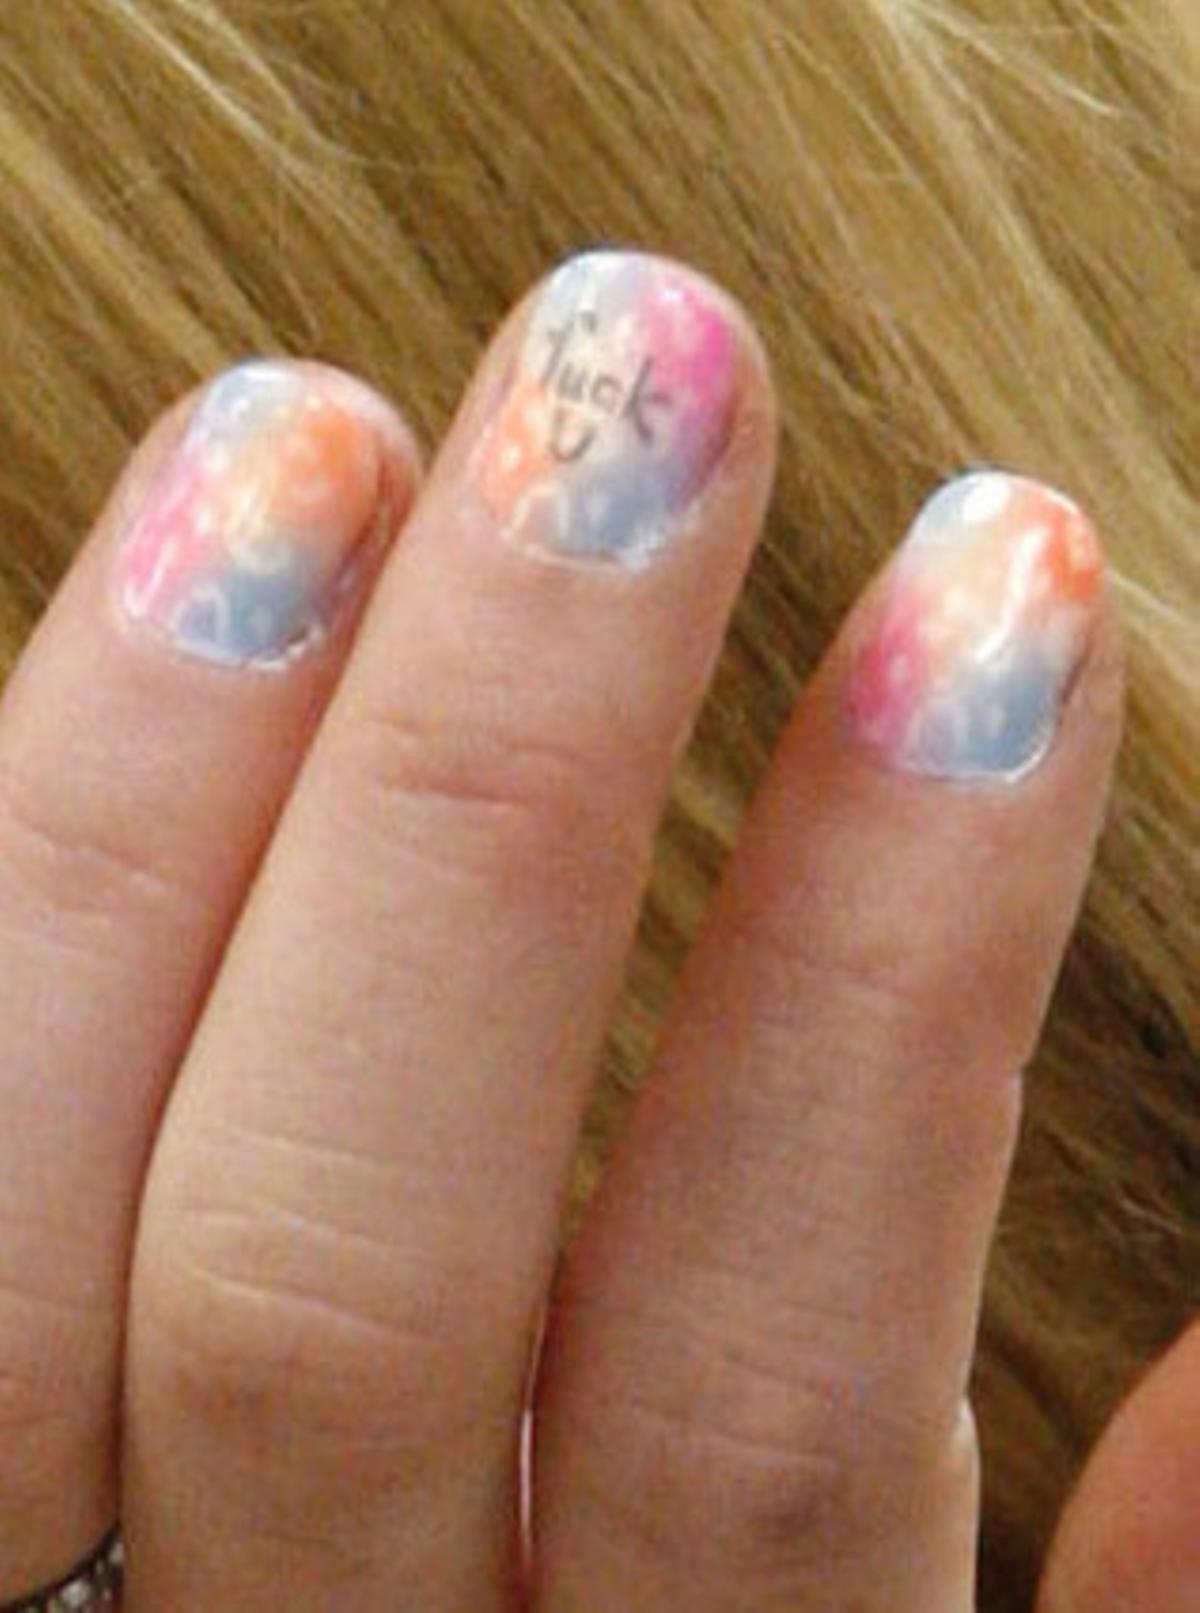 Detalle de la mano izquierda de Lohan durante la celebración del juicio. Pintado en la uña del dedo corazón puede leerse el lema: Que te den.